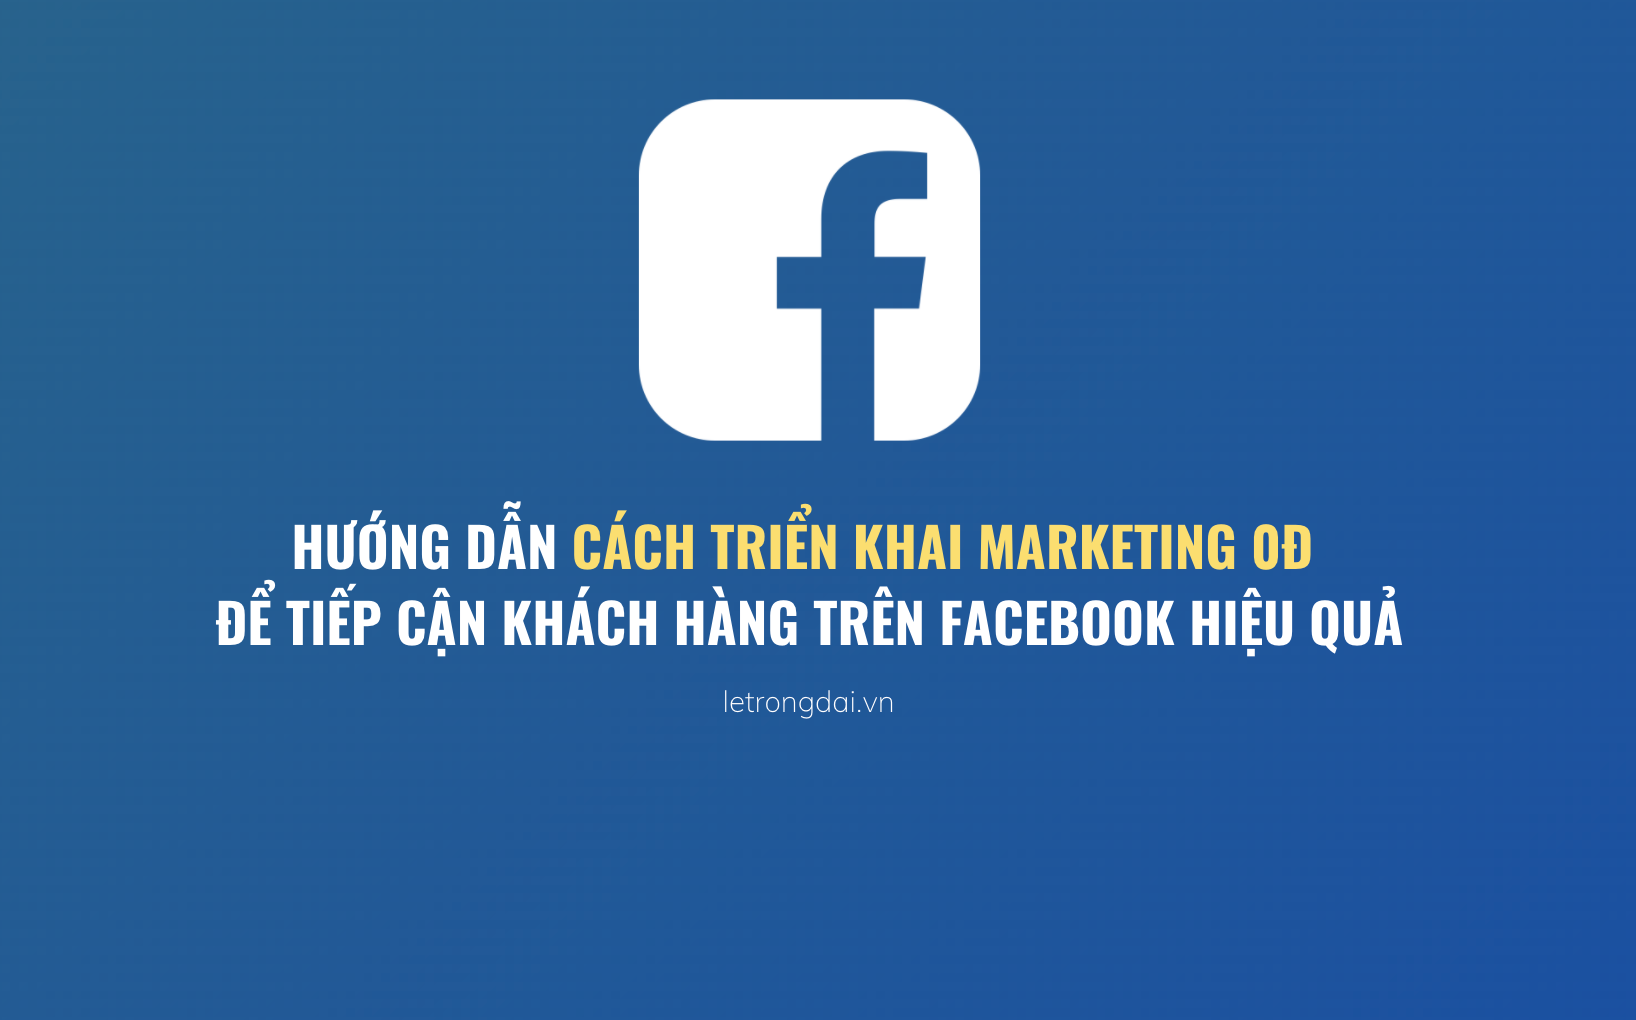 Hướng Dẫn Cách Triển Khai Marketing 0đ để Tiếp Cận Khách Hàng Trên Facebook Hiệu Quả